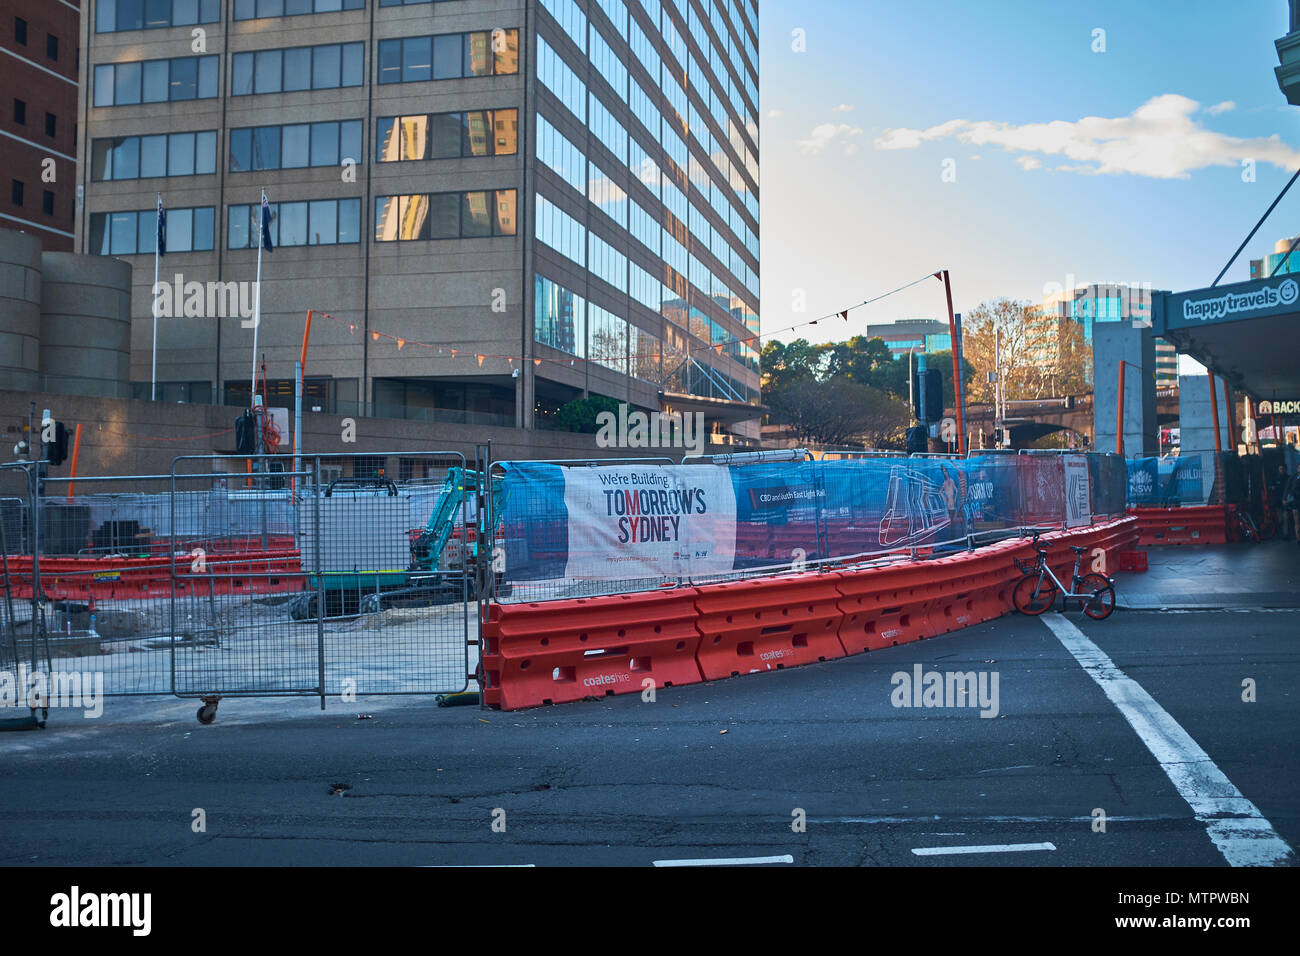 Scena di un'area di costruzione di Sydney a causa di un nuovo sistema di metropolitana con il segno ' stiamo costruendo domani Sydney' sulla scherma temporanea Foto Stock